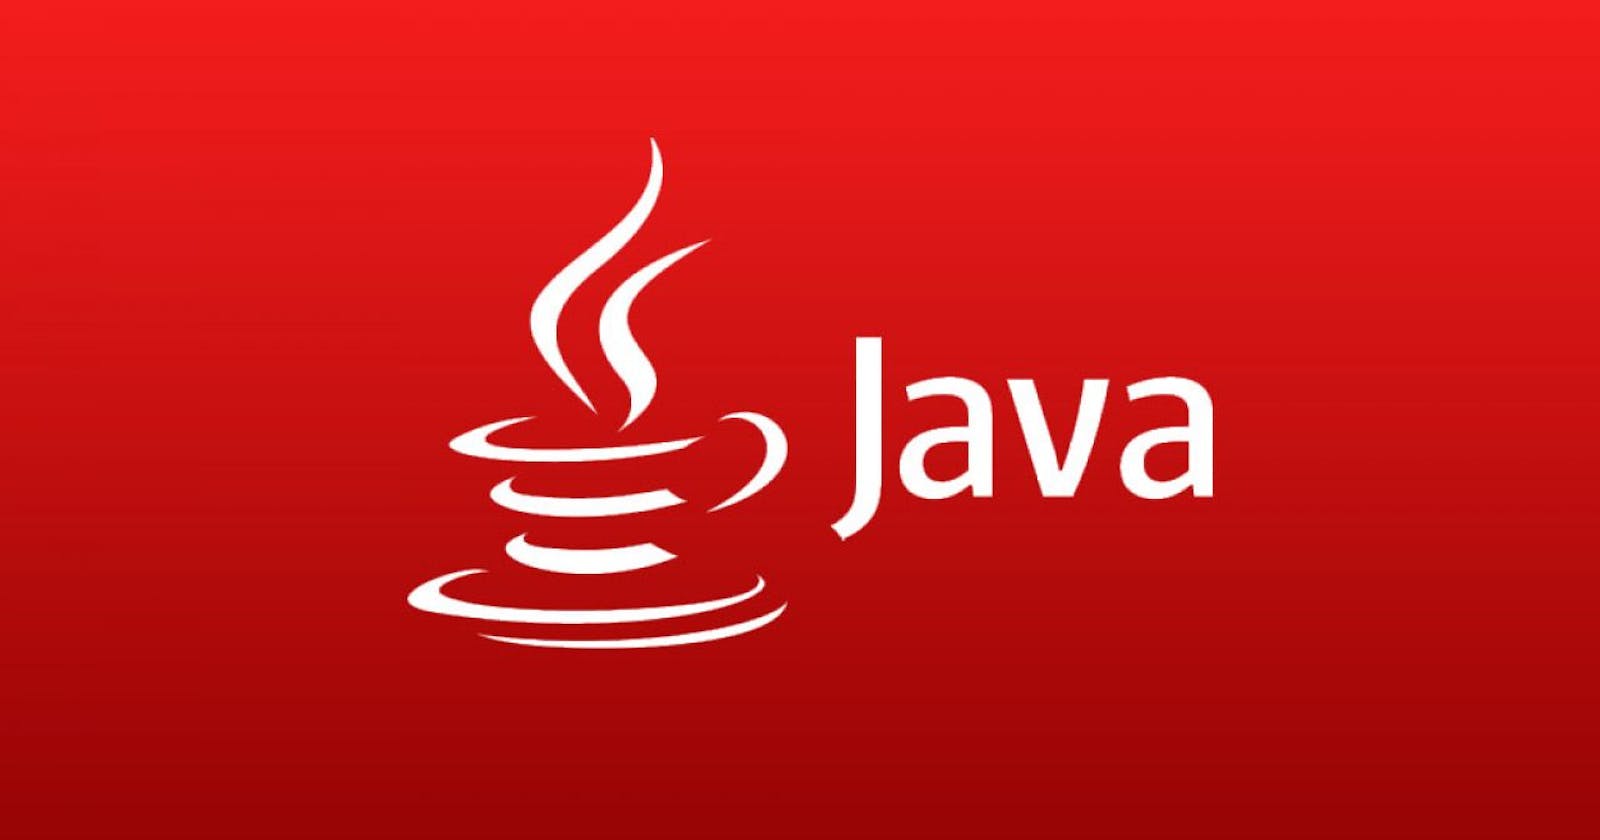 Primeros pasos con Java... o algo así